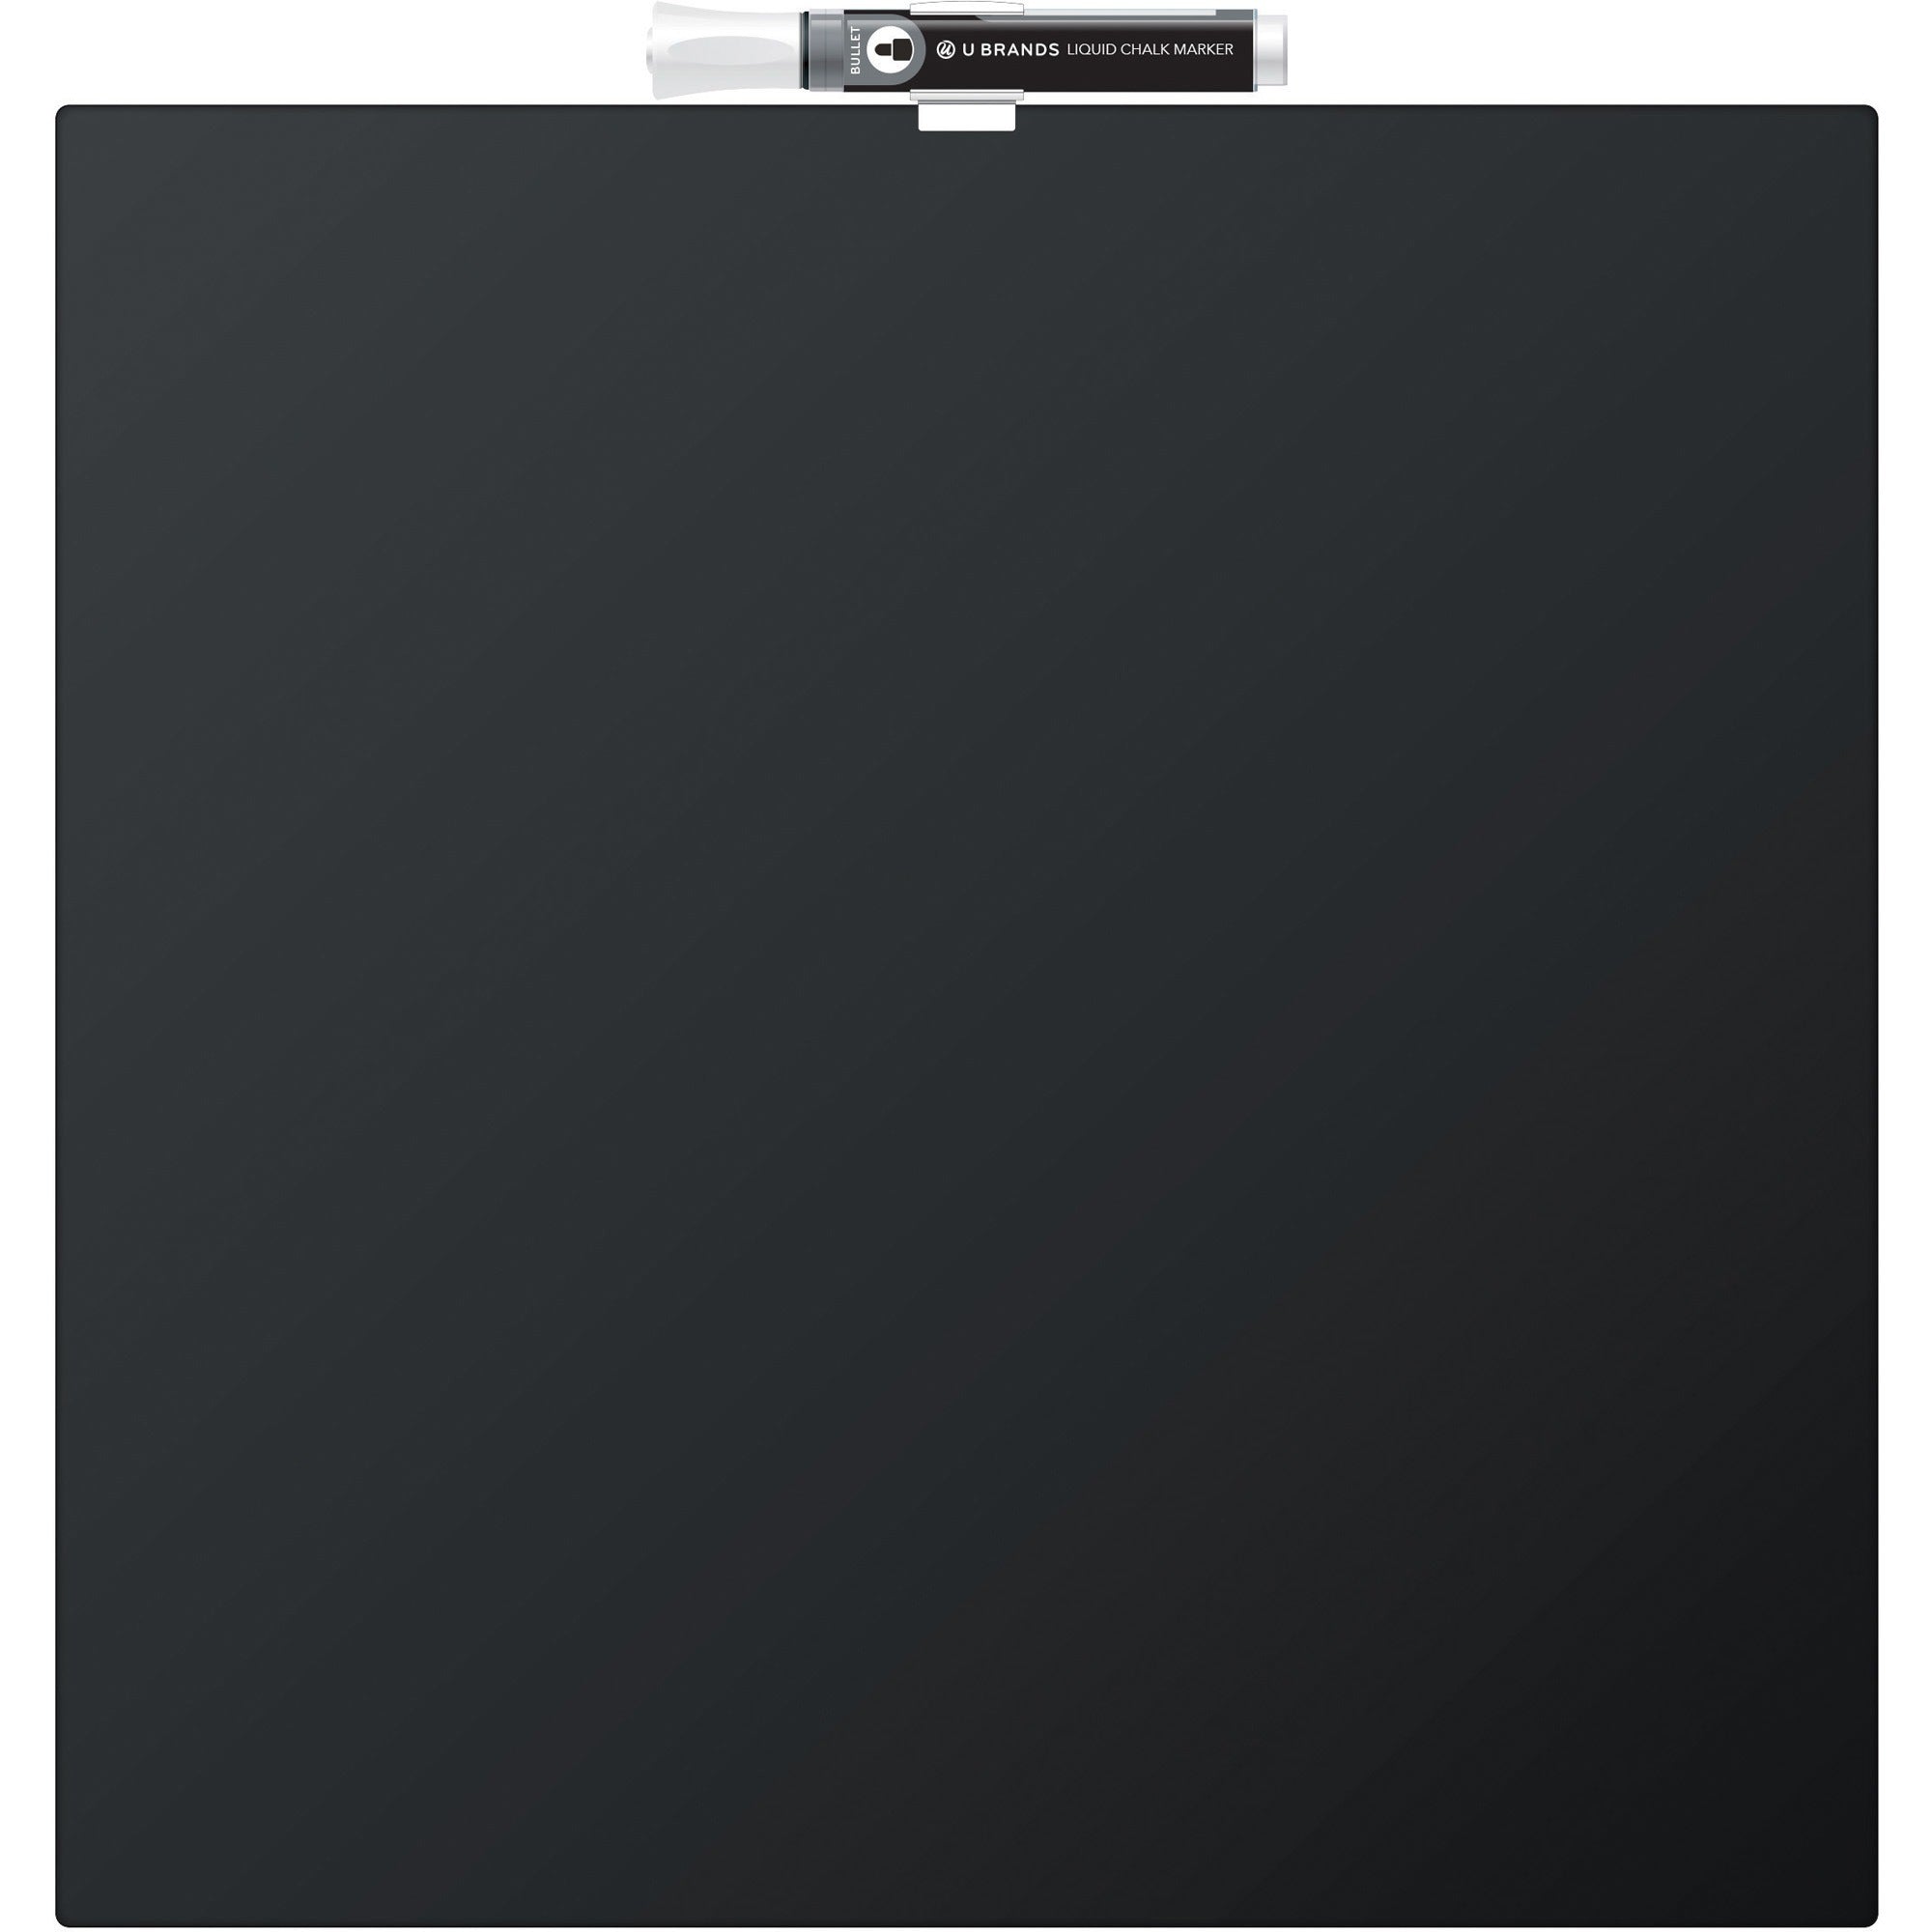 u-brands-magnetic-chalkboard-1467-height-x-14-width-black-painted-steel-surface-square-horizontal-1-each_ubr468u0004 - 1